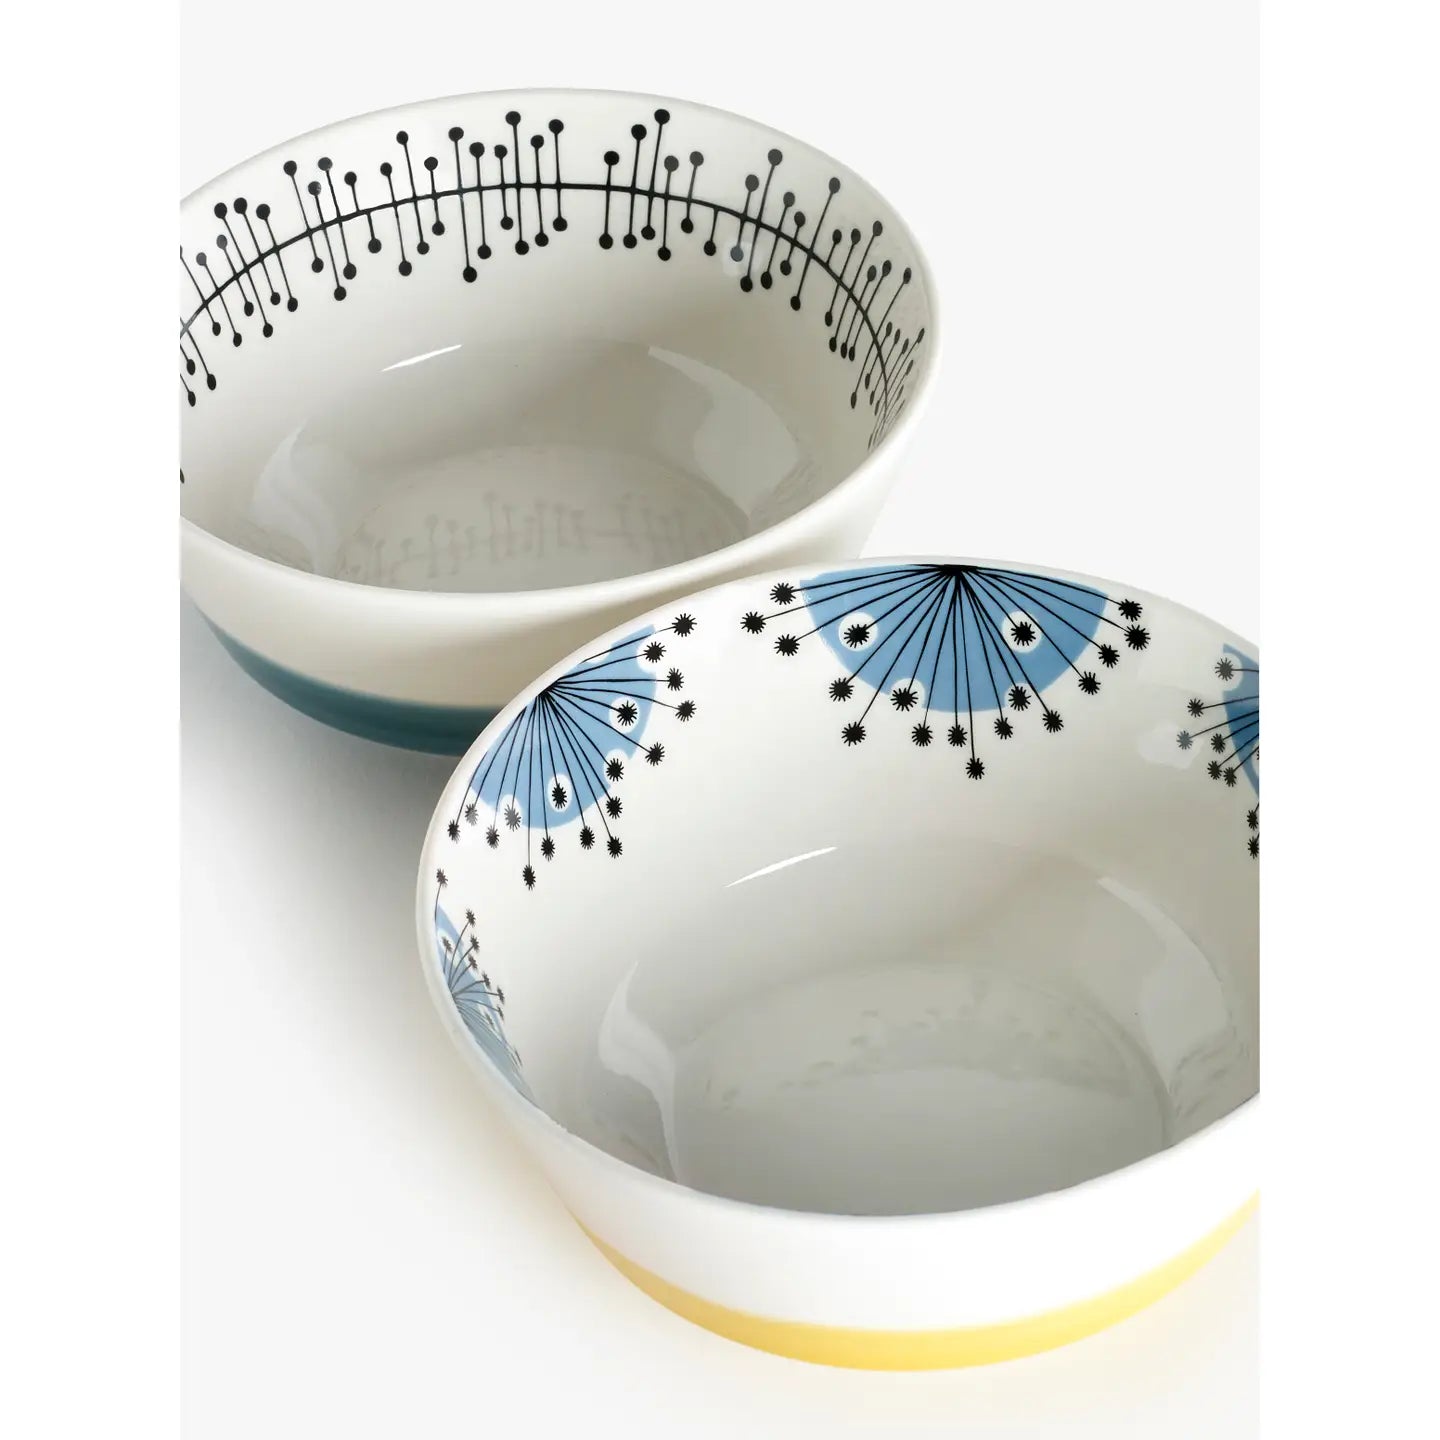 Dandelion cereal bowls (set of 2)